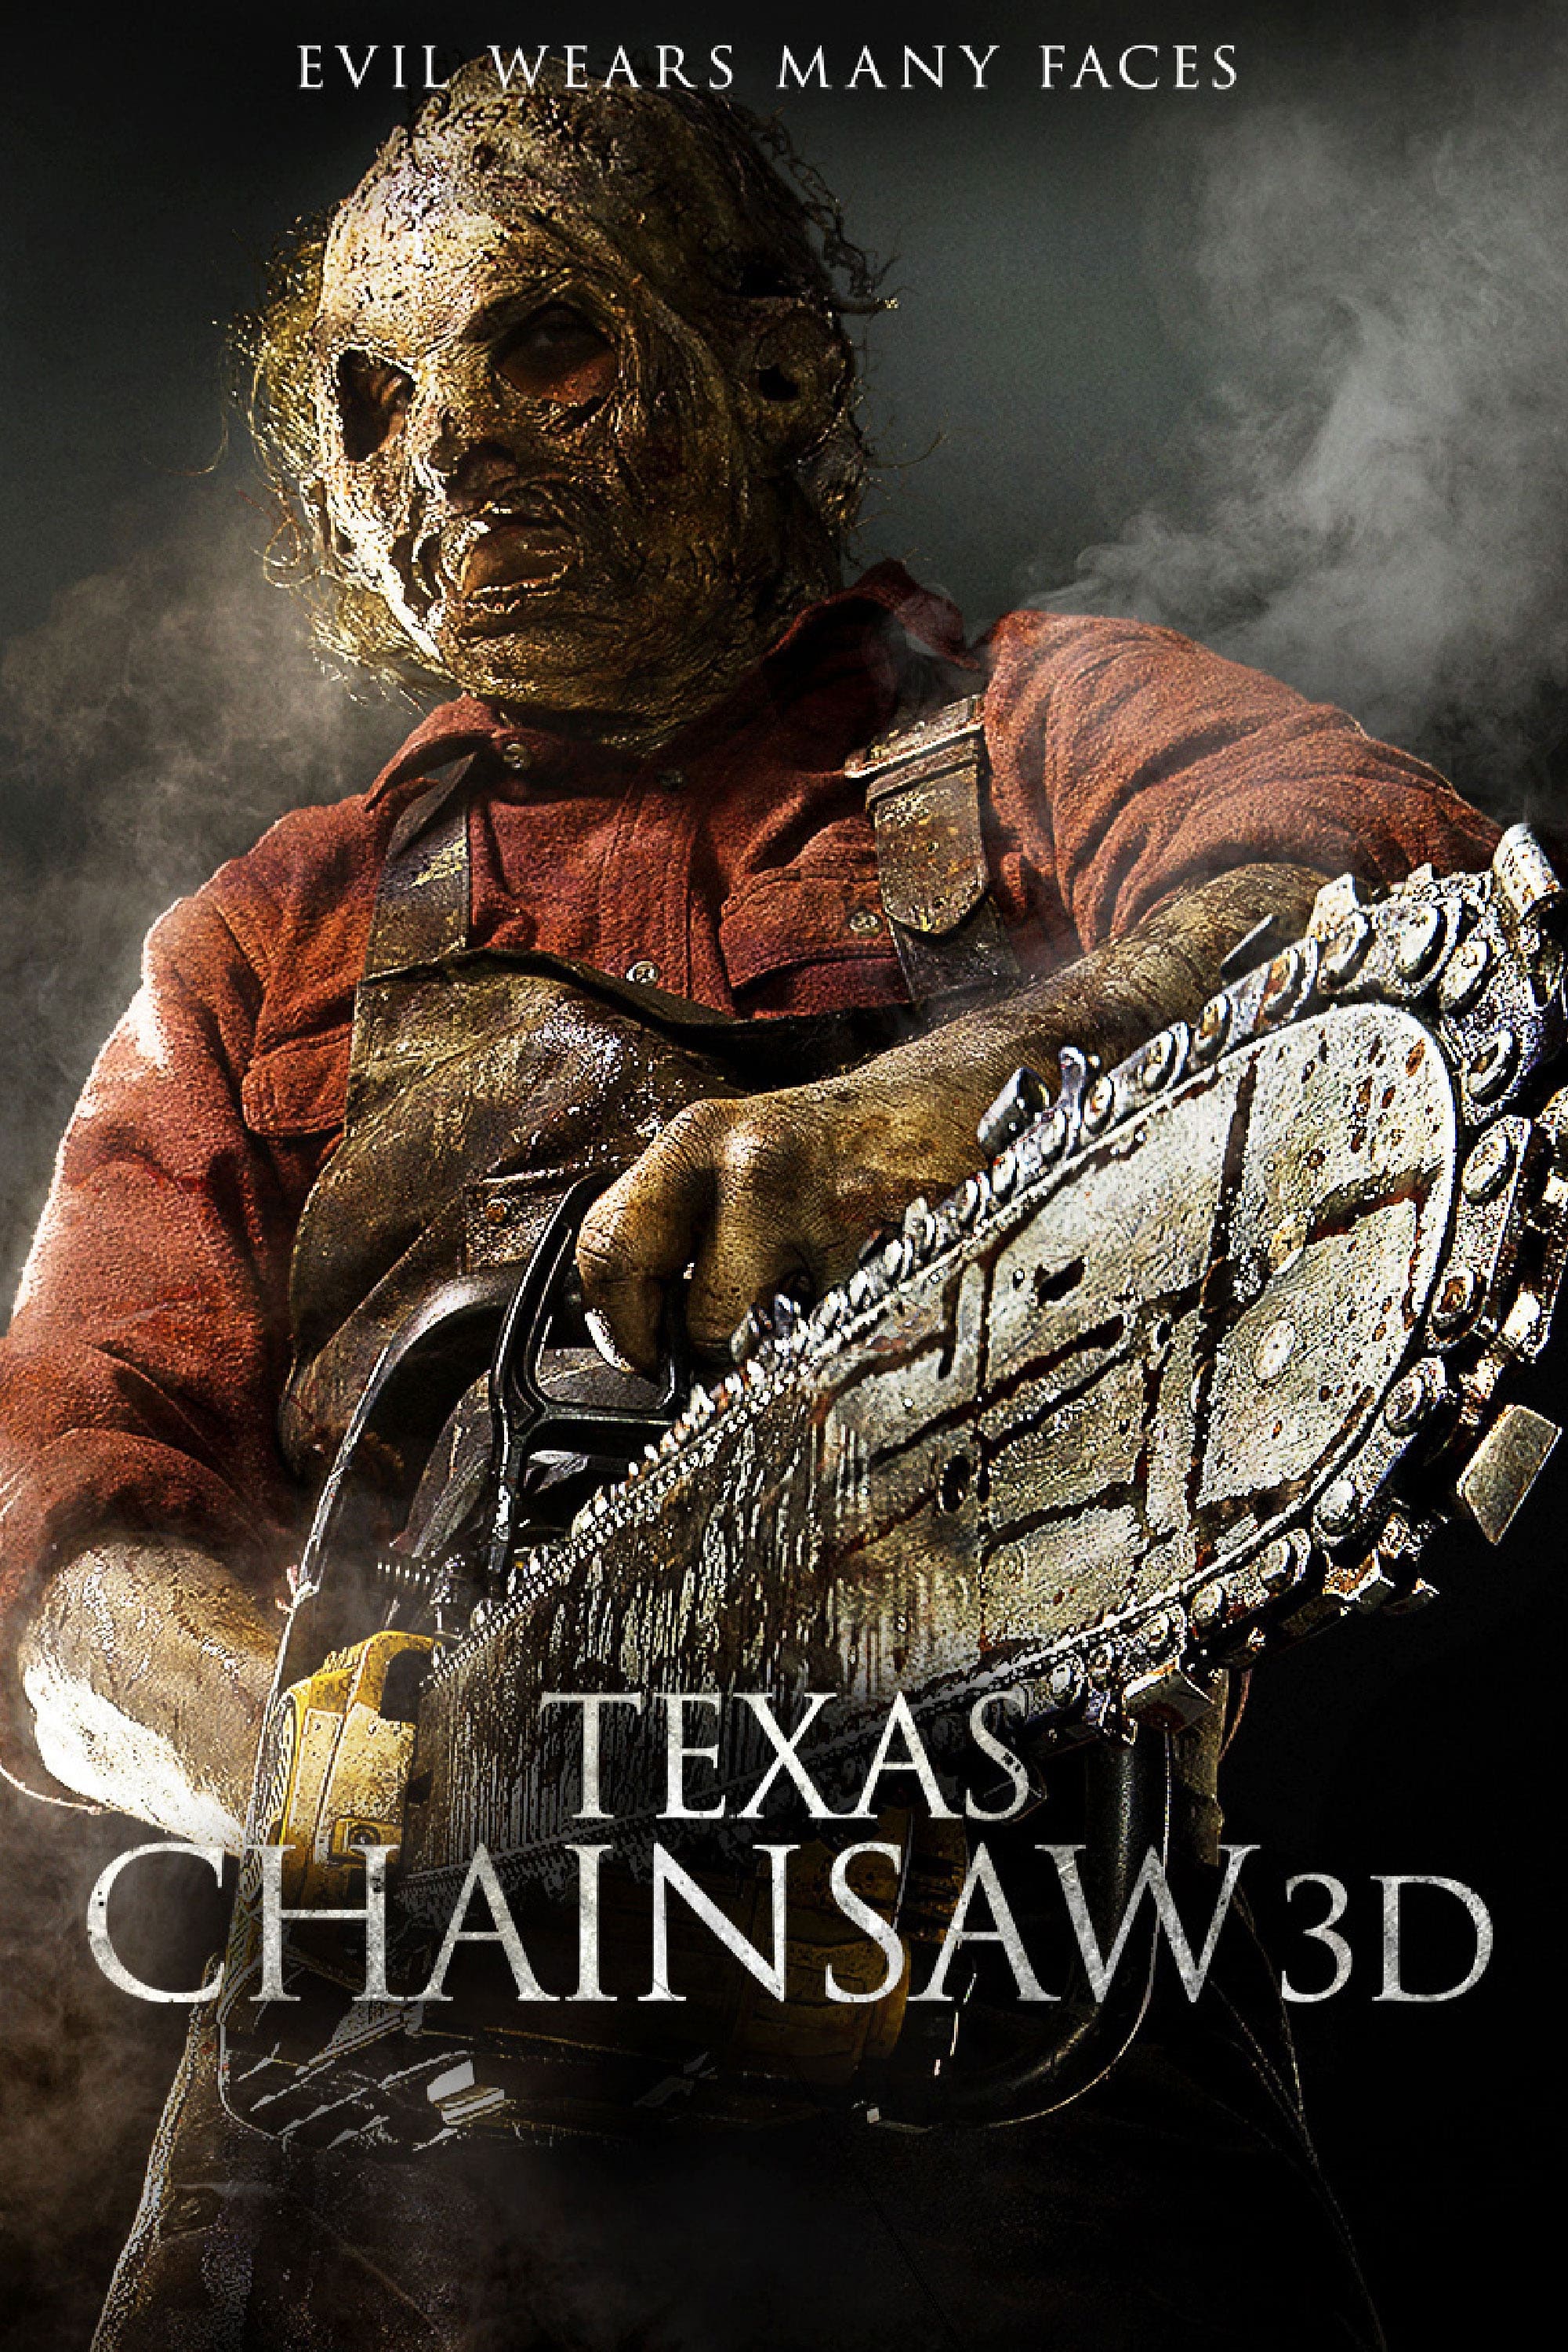 La matanza de Texas 3D (2013)